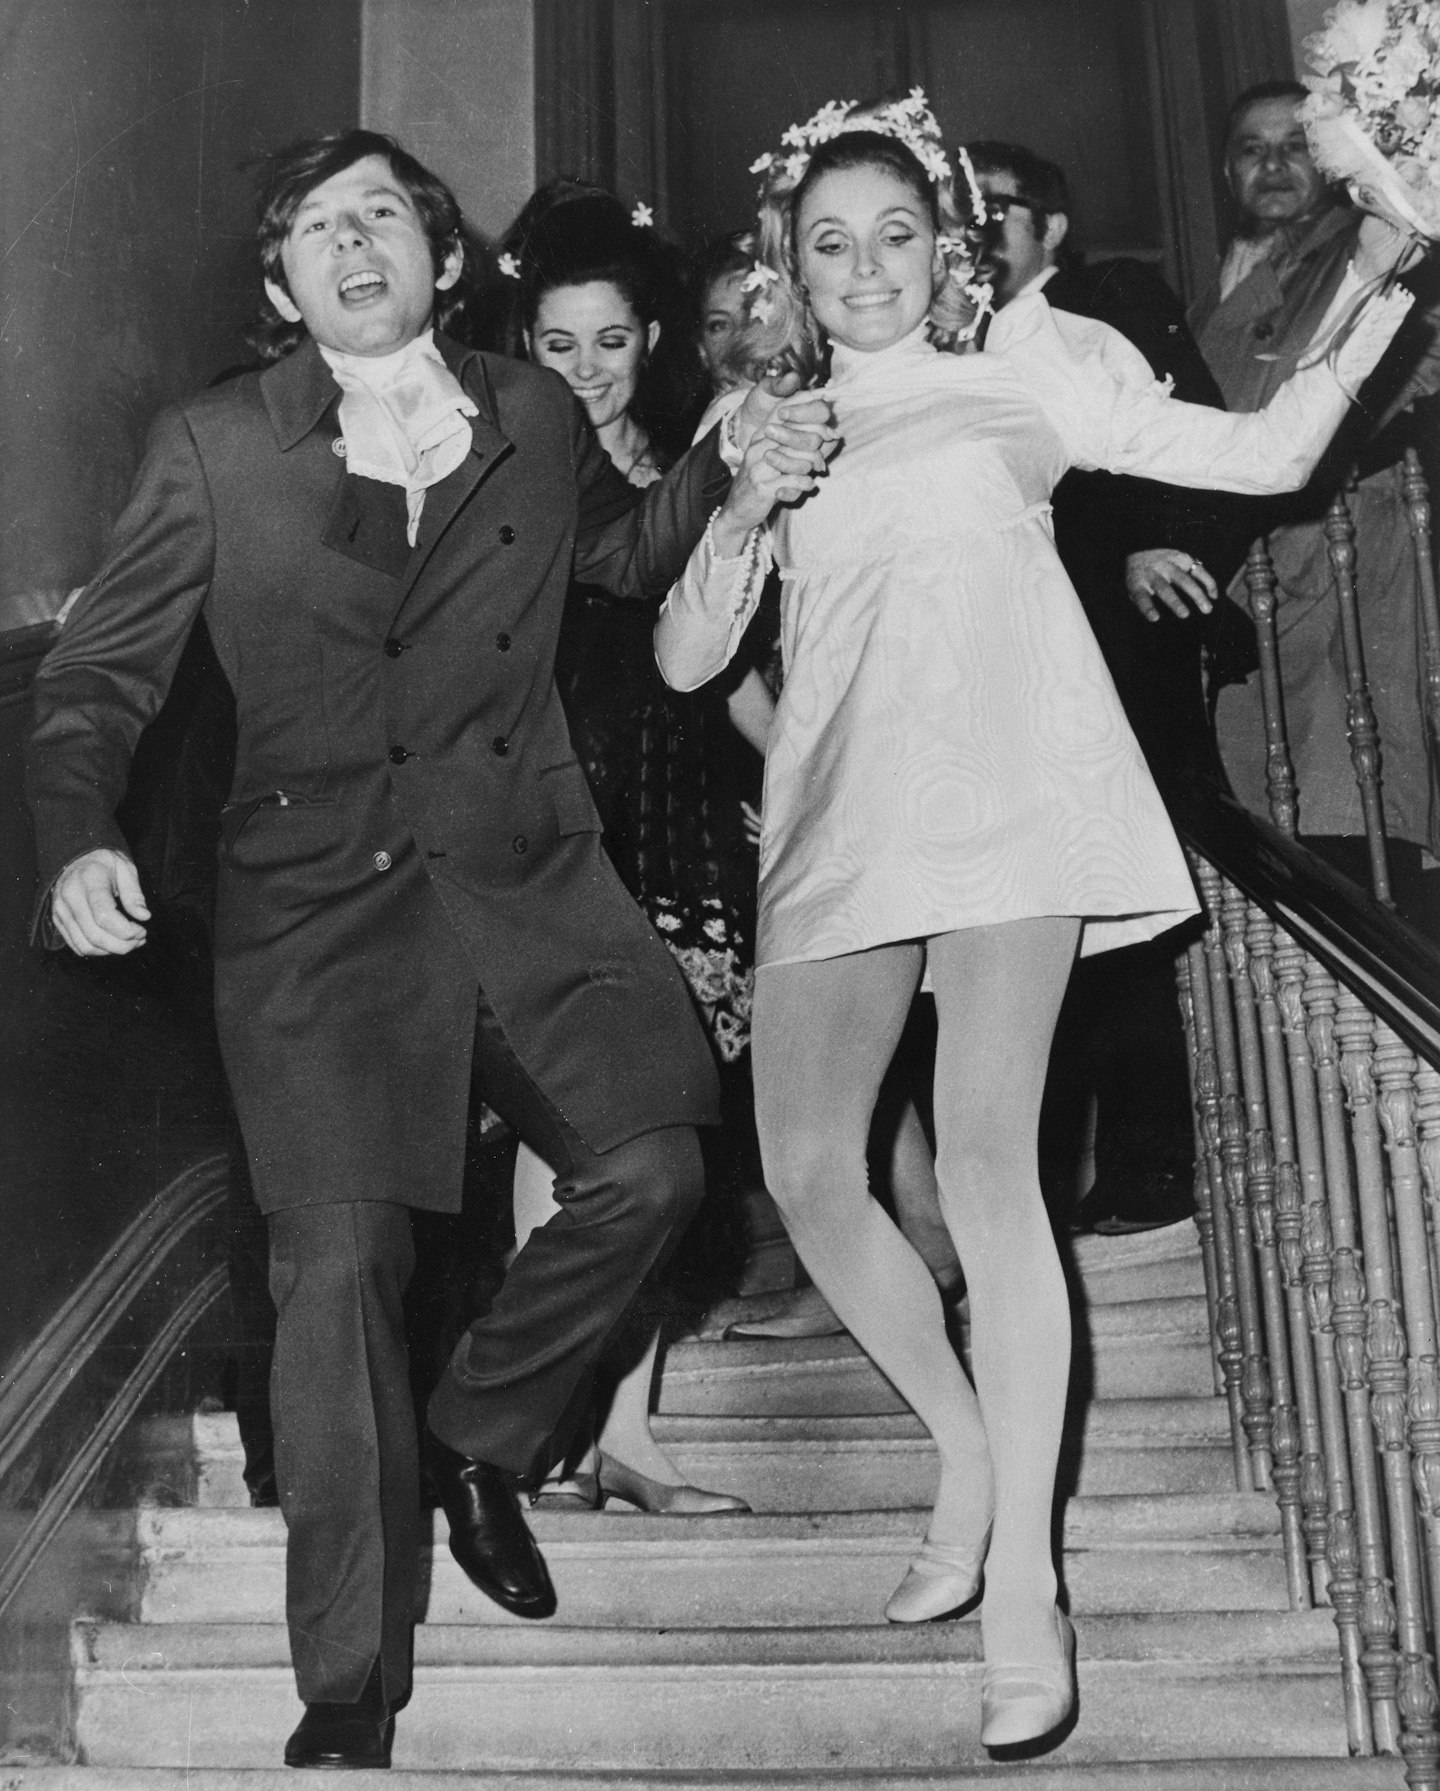 Sharon Tate and Roman Polanski on their wedding day in 1968